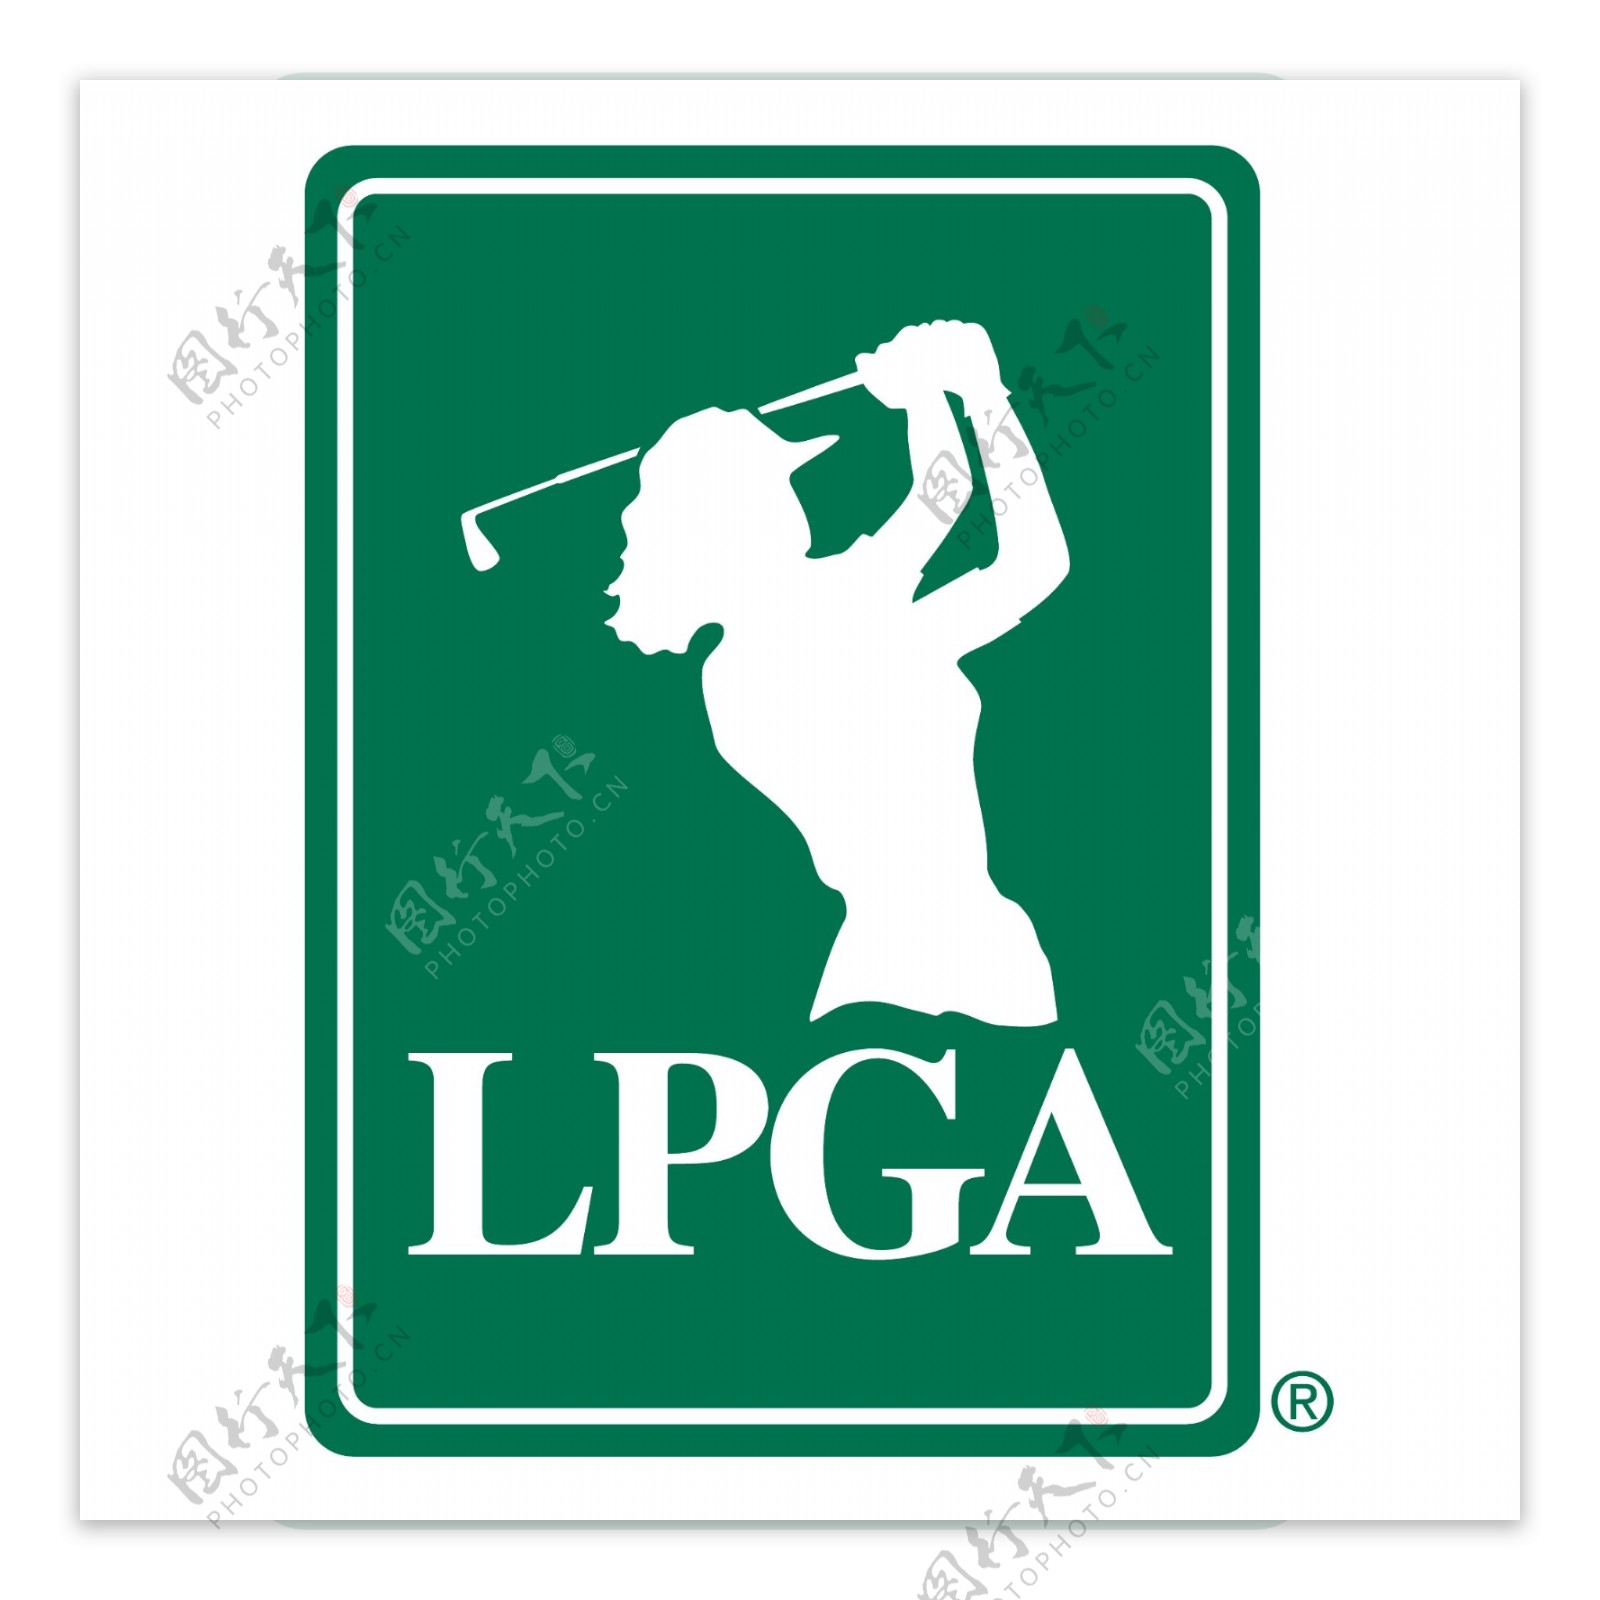 女子职业高尔夫协会